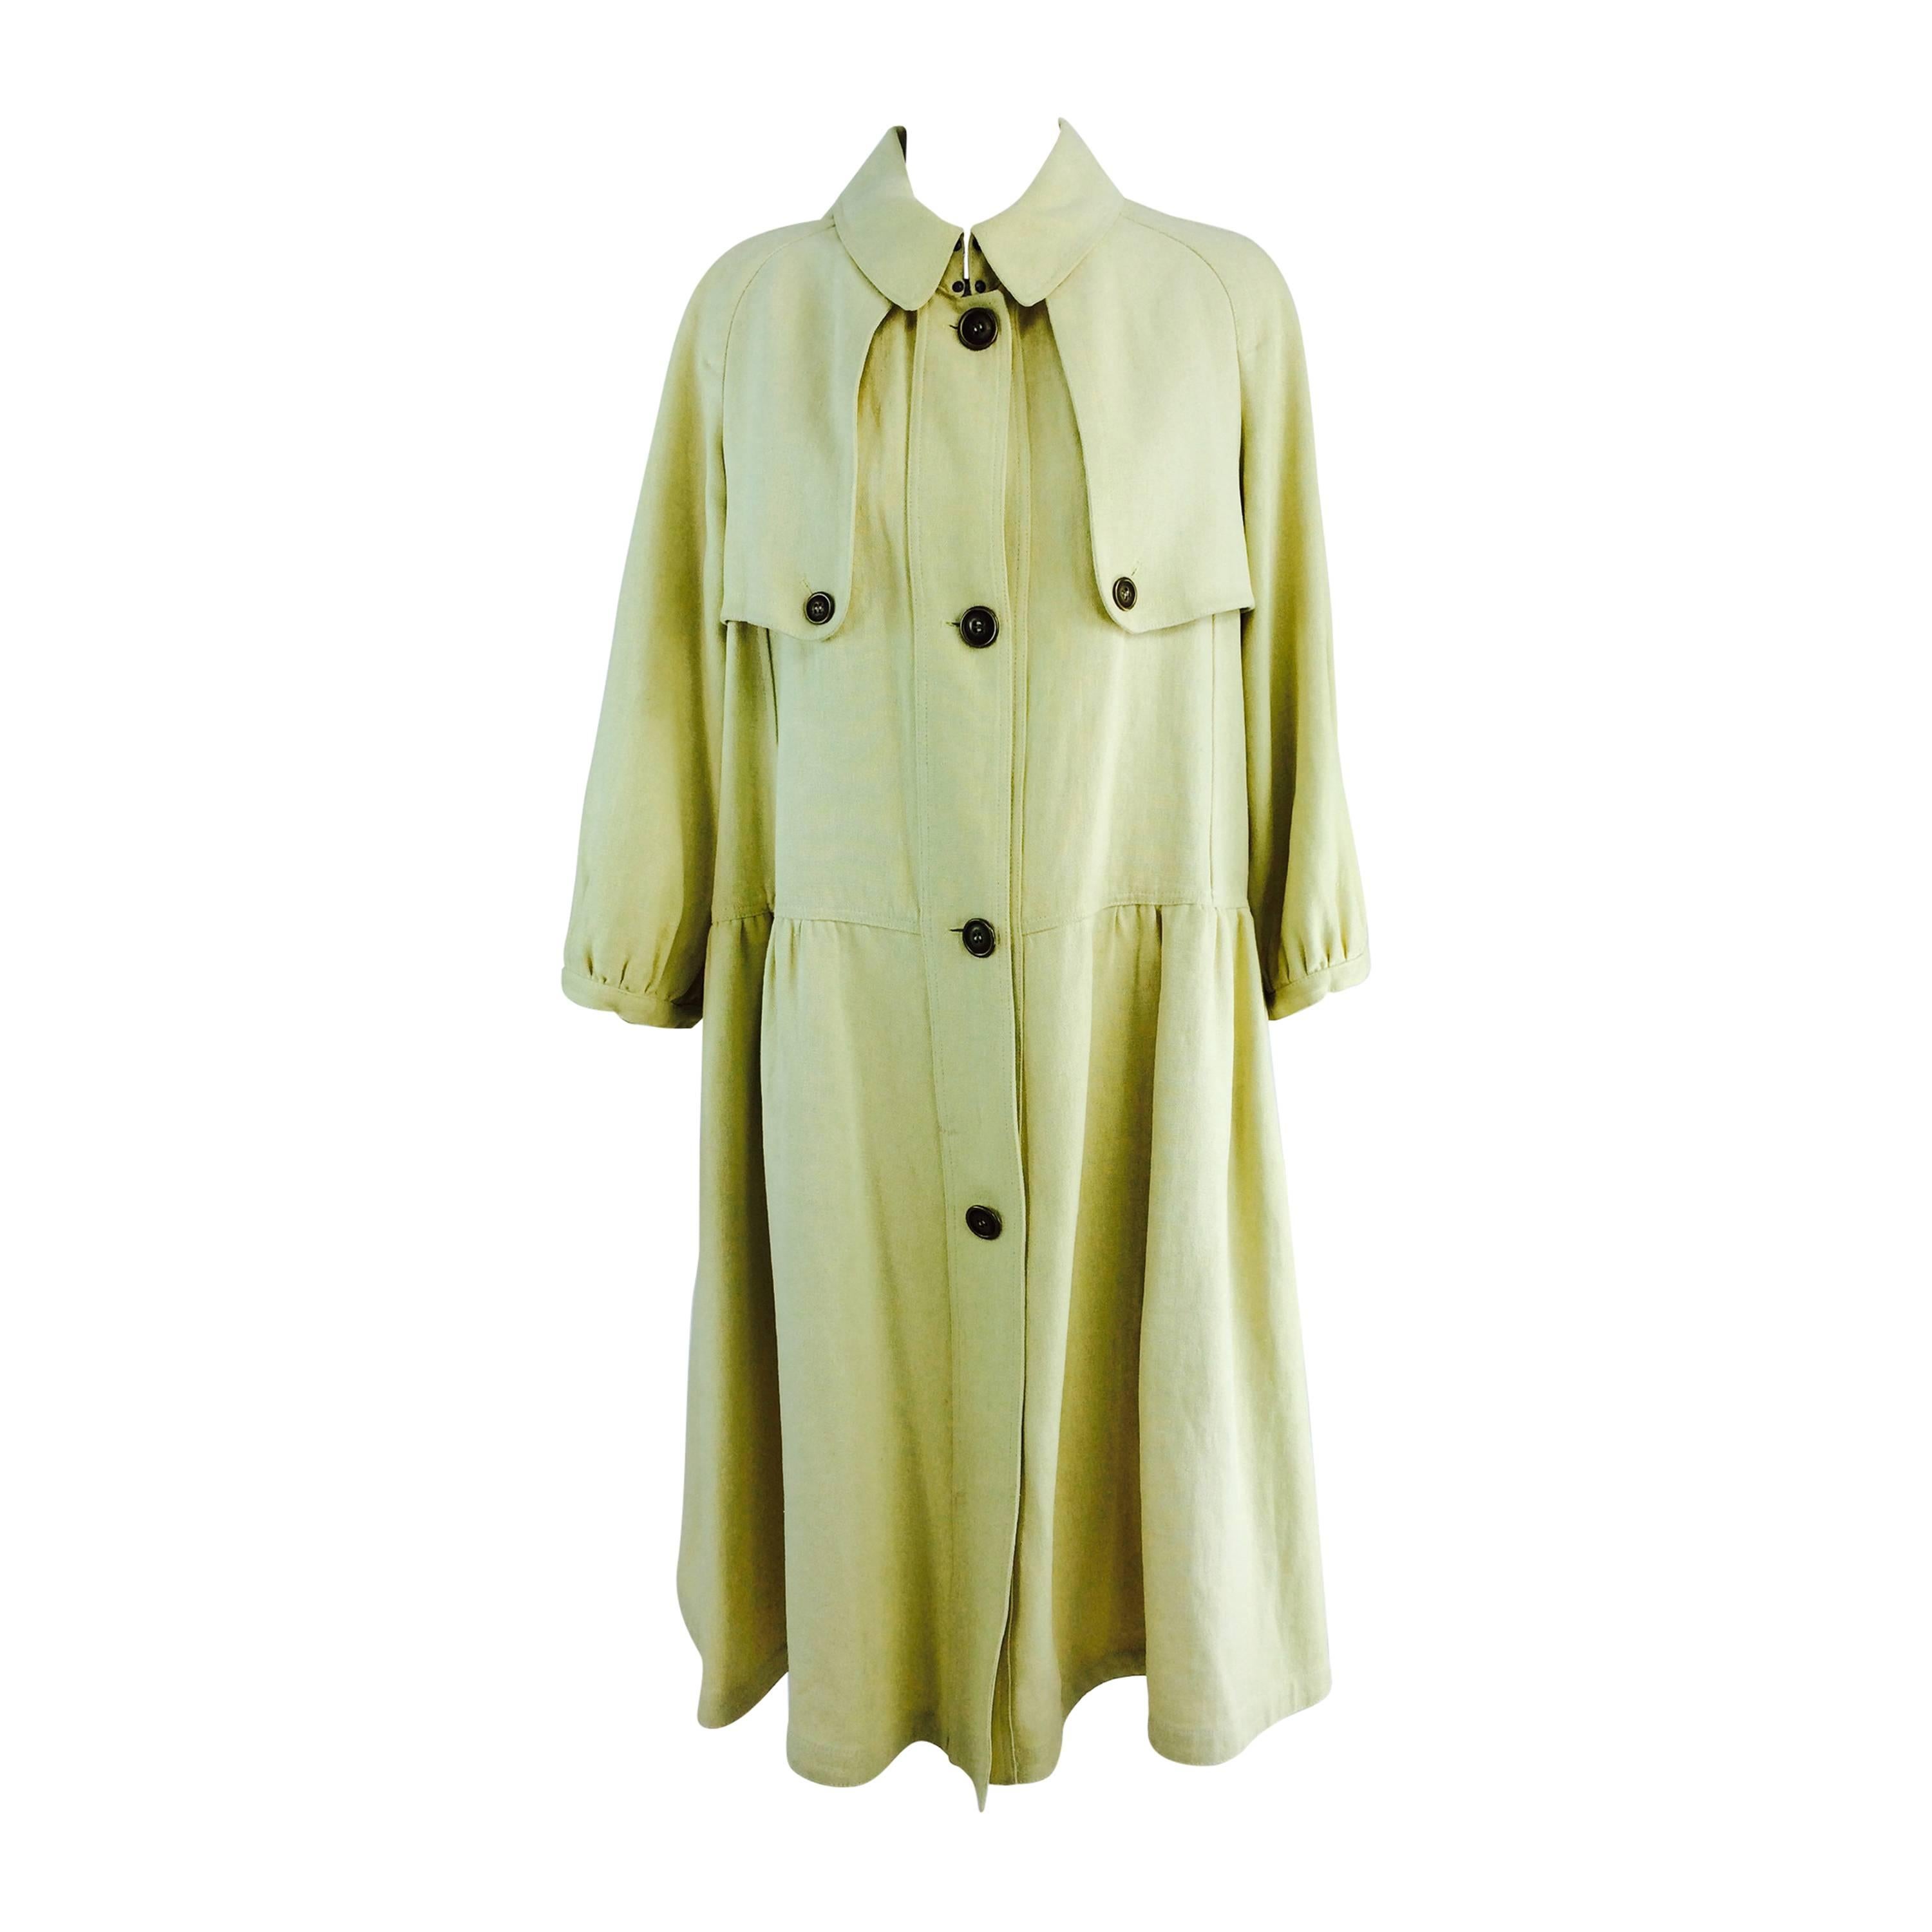 Burberry butter yellow hemp coat dress 2005